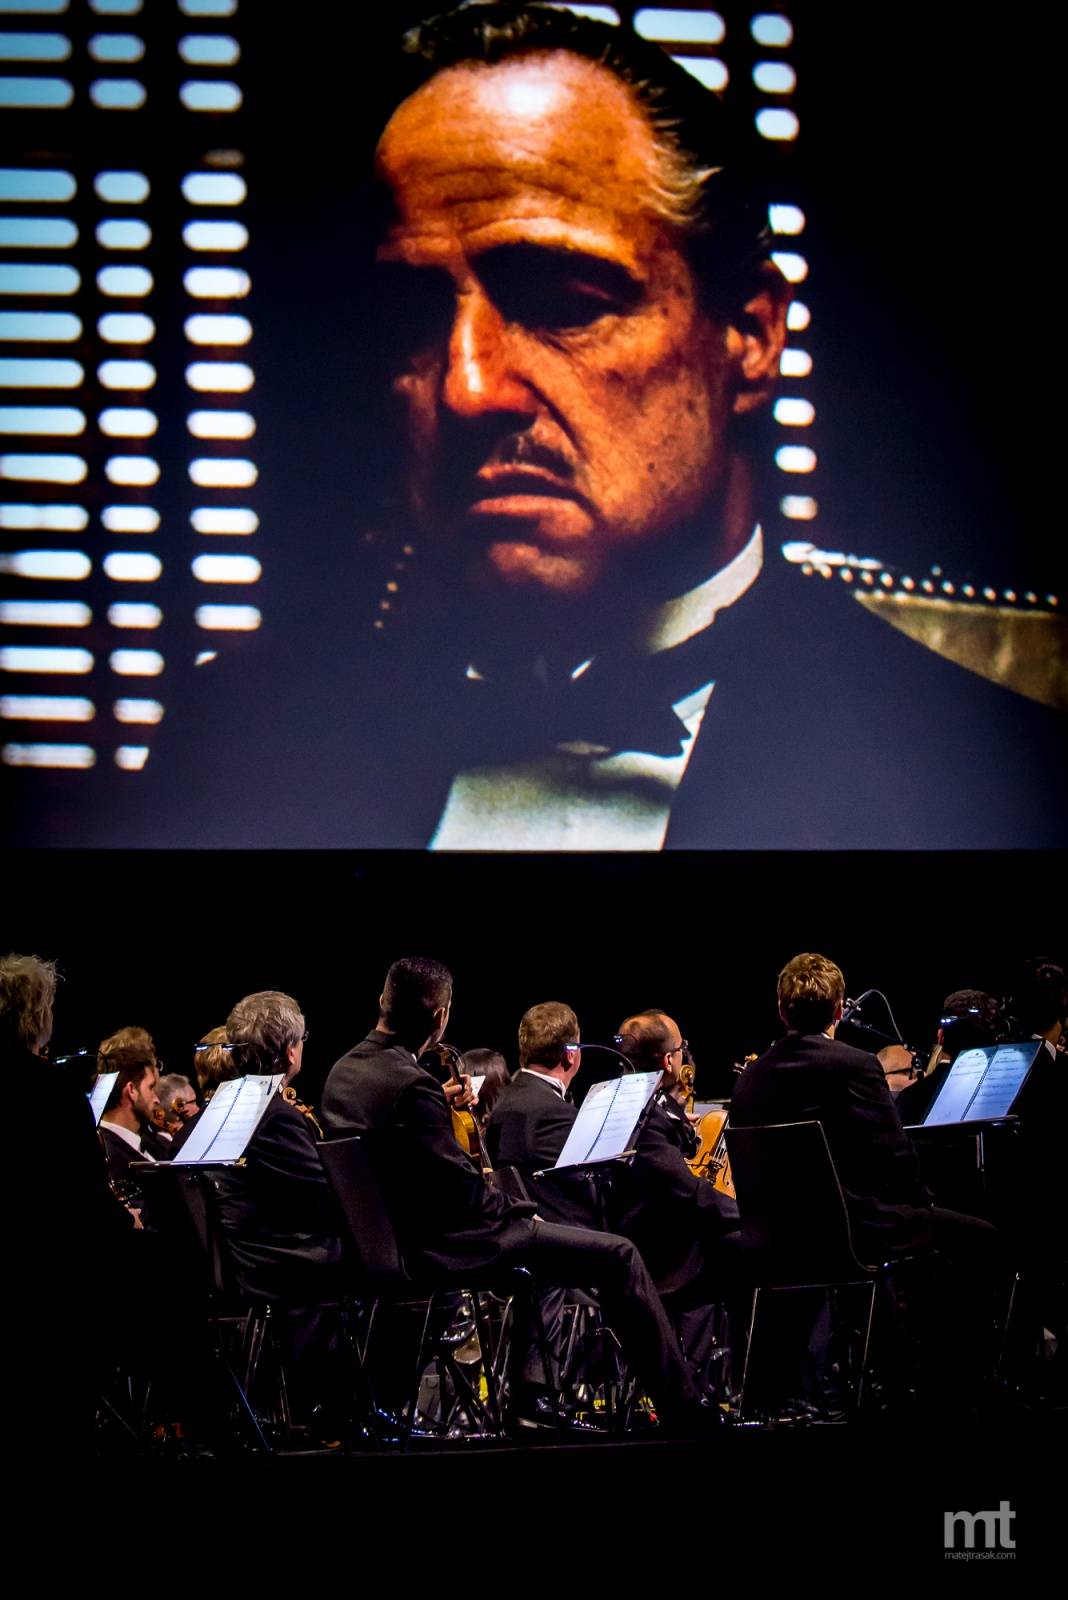 LIVE: Filmový Kmotr s orchestrem? Dobrý zážitek, ale ne nezapomenutelný